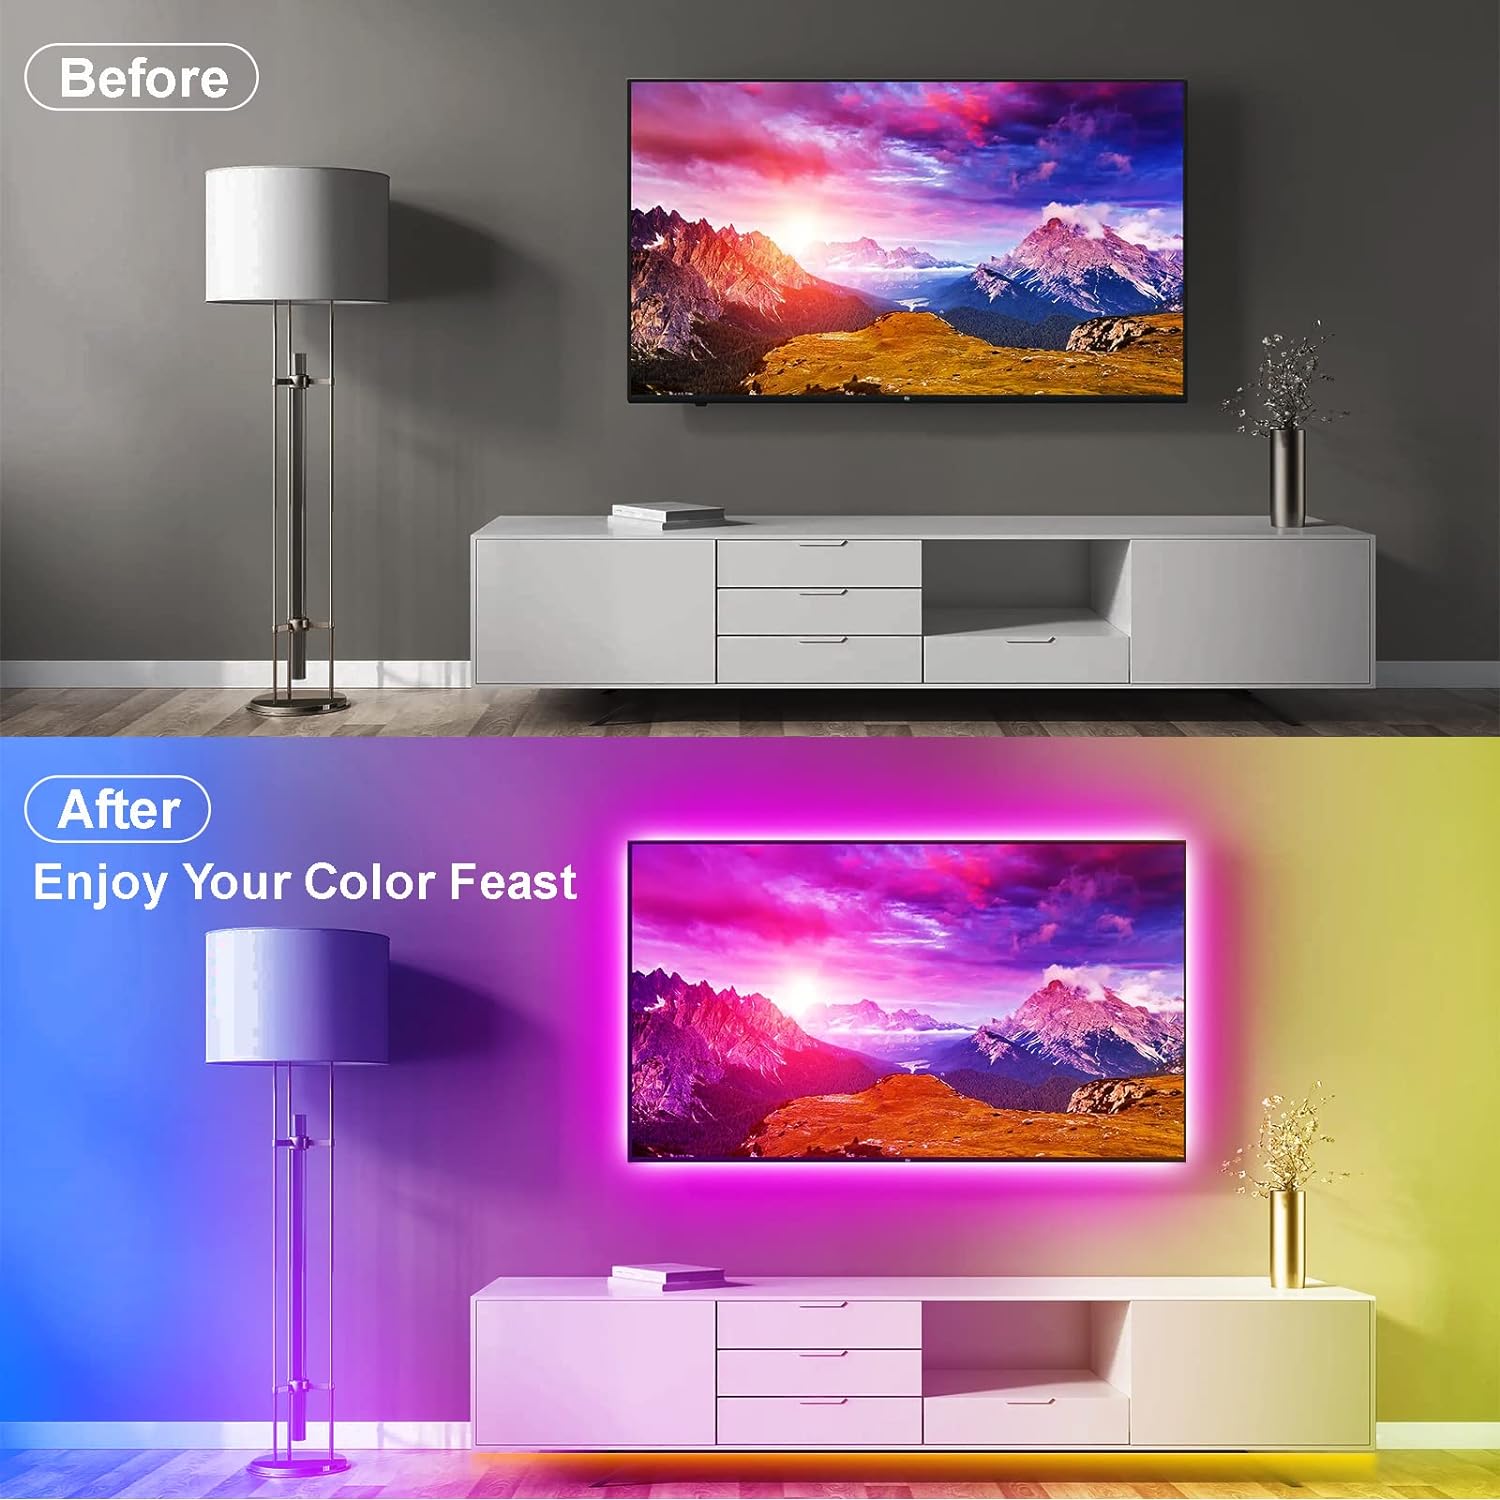 Strip striscia led luce RGB 3 5m per TV televisore retroilluminazione  multicolore musicale con telecomando con